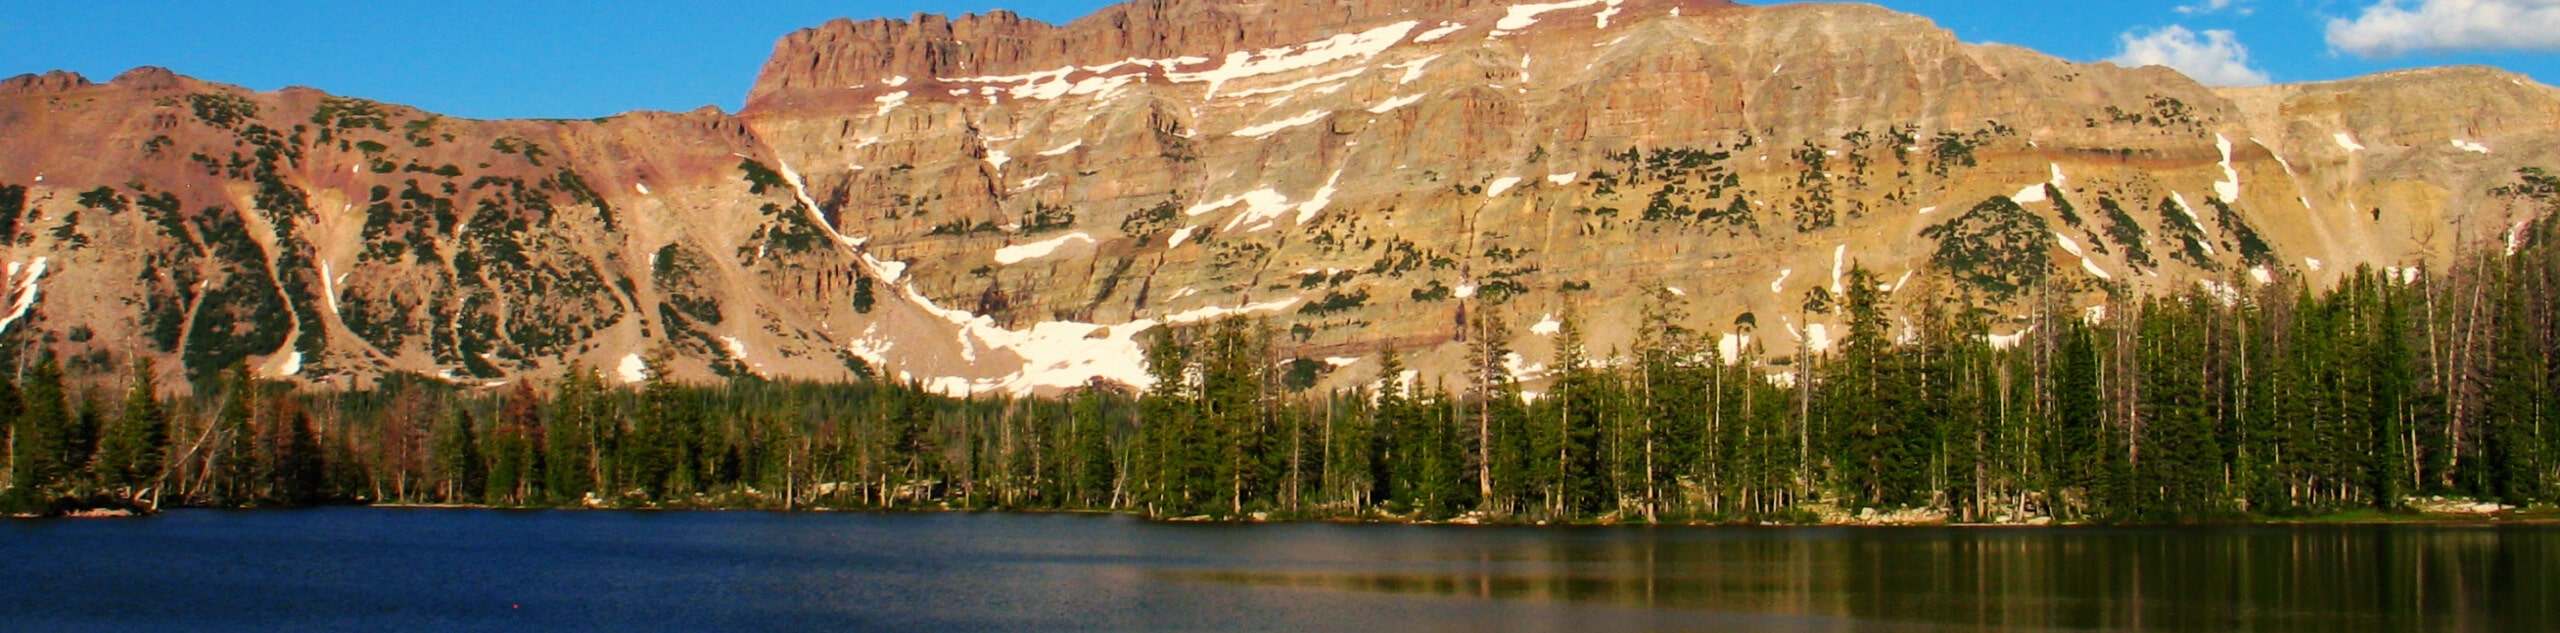 Ruth Lake, Jewel Lake, Cutthroat Lake, and Teal Lake Trail